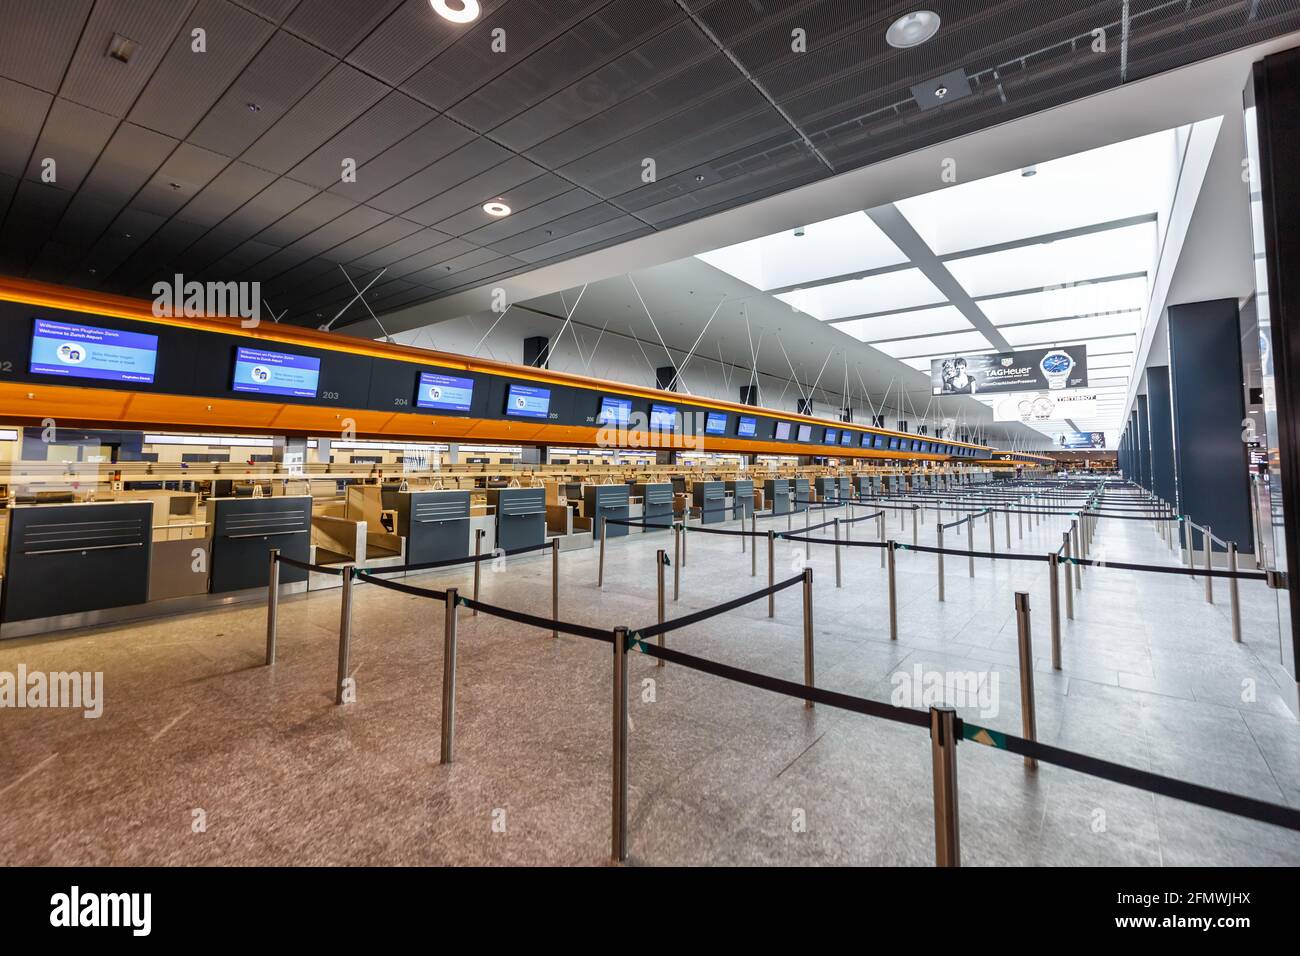 Zurich, Switzerland - September 23, 2020: Terminal Check-in 2 at Zurich Airport (ZRH) in Switzerland. Stock Photo